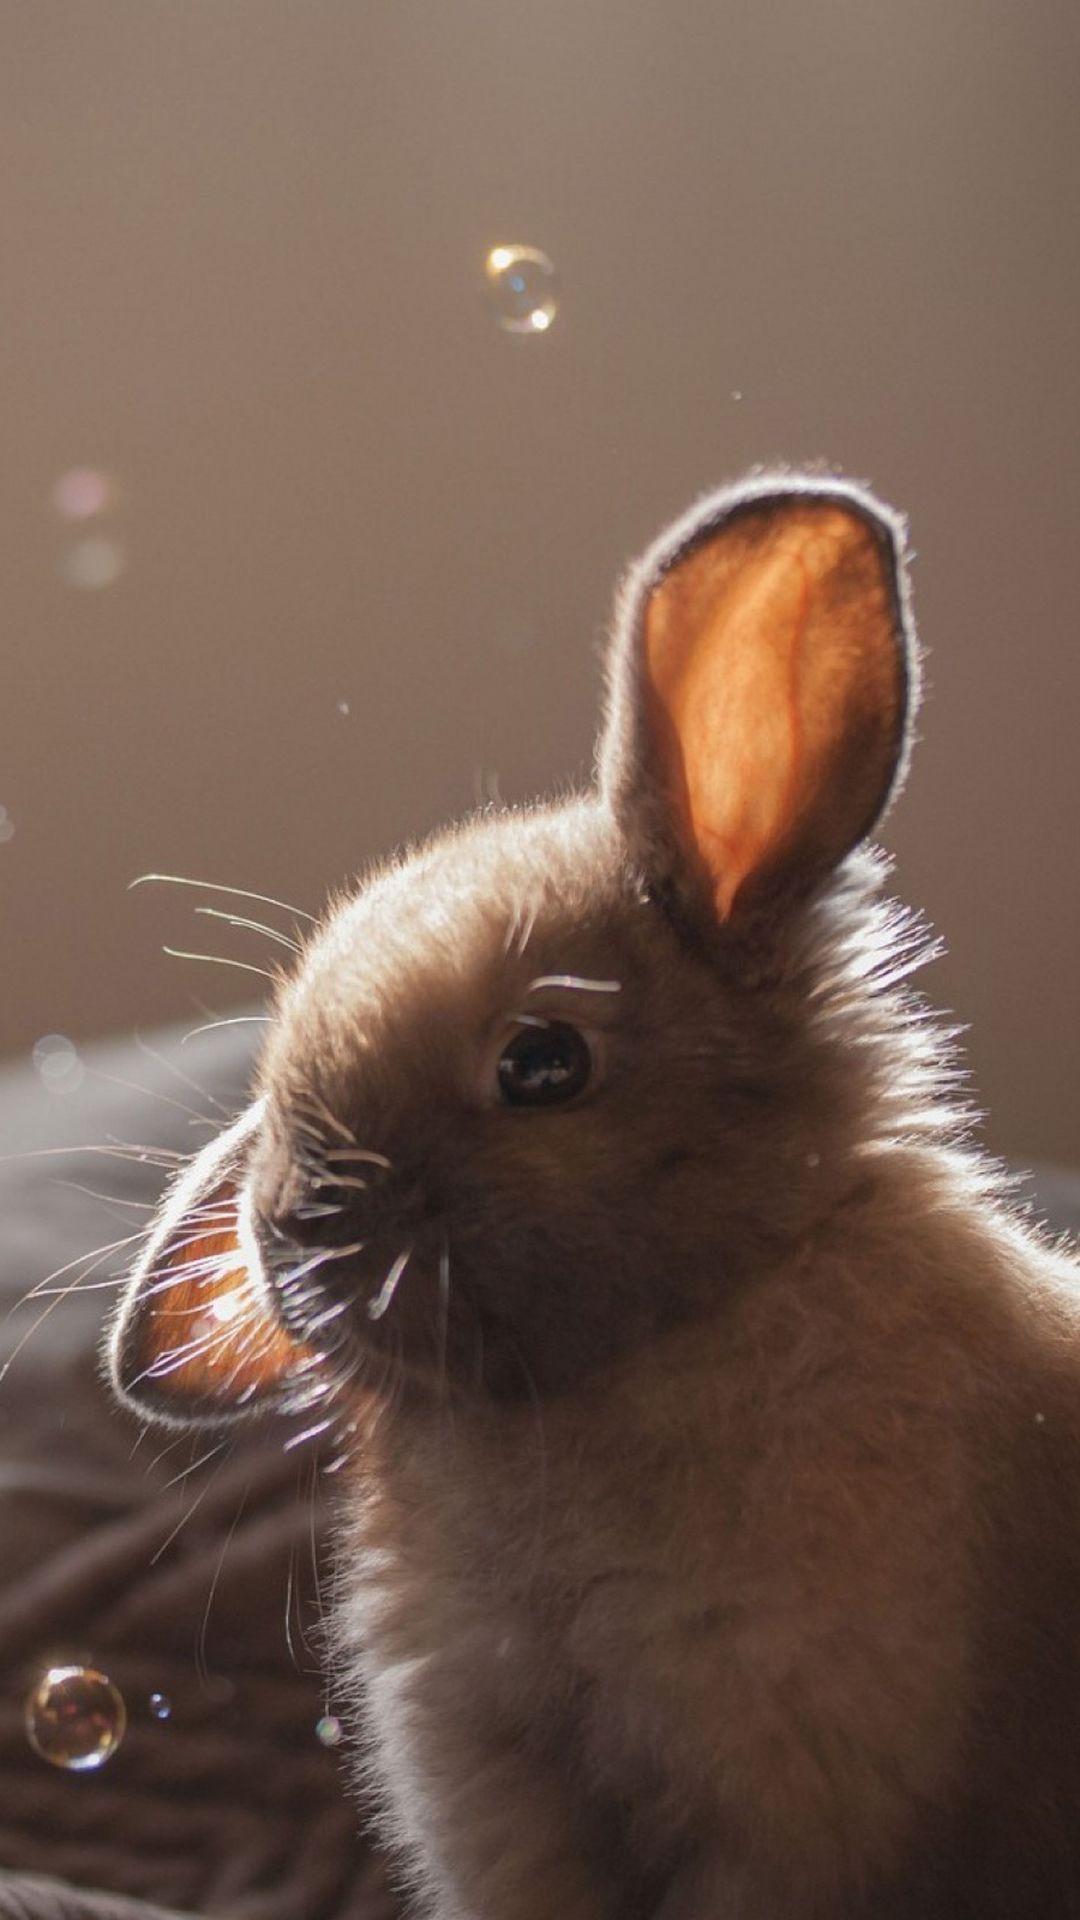 Cute Bunny Soap Bubbles iPhone 6 wallpaper. ANIMALS